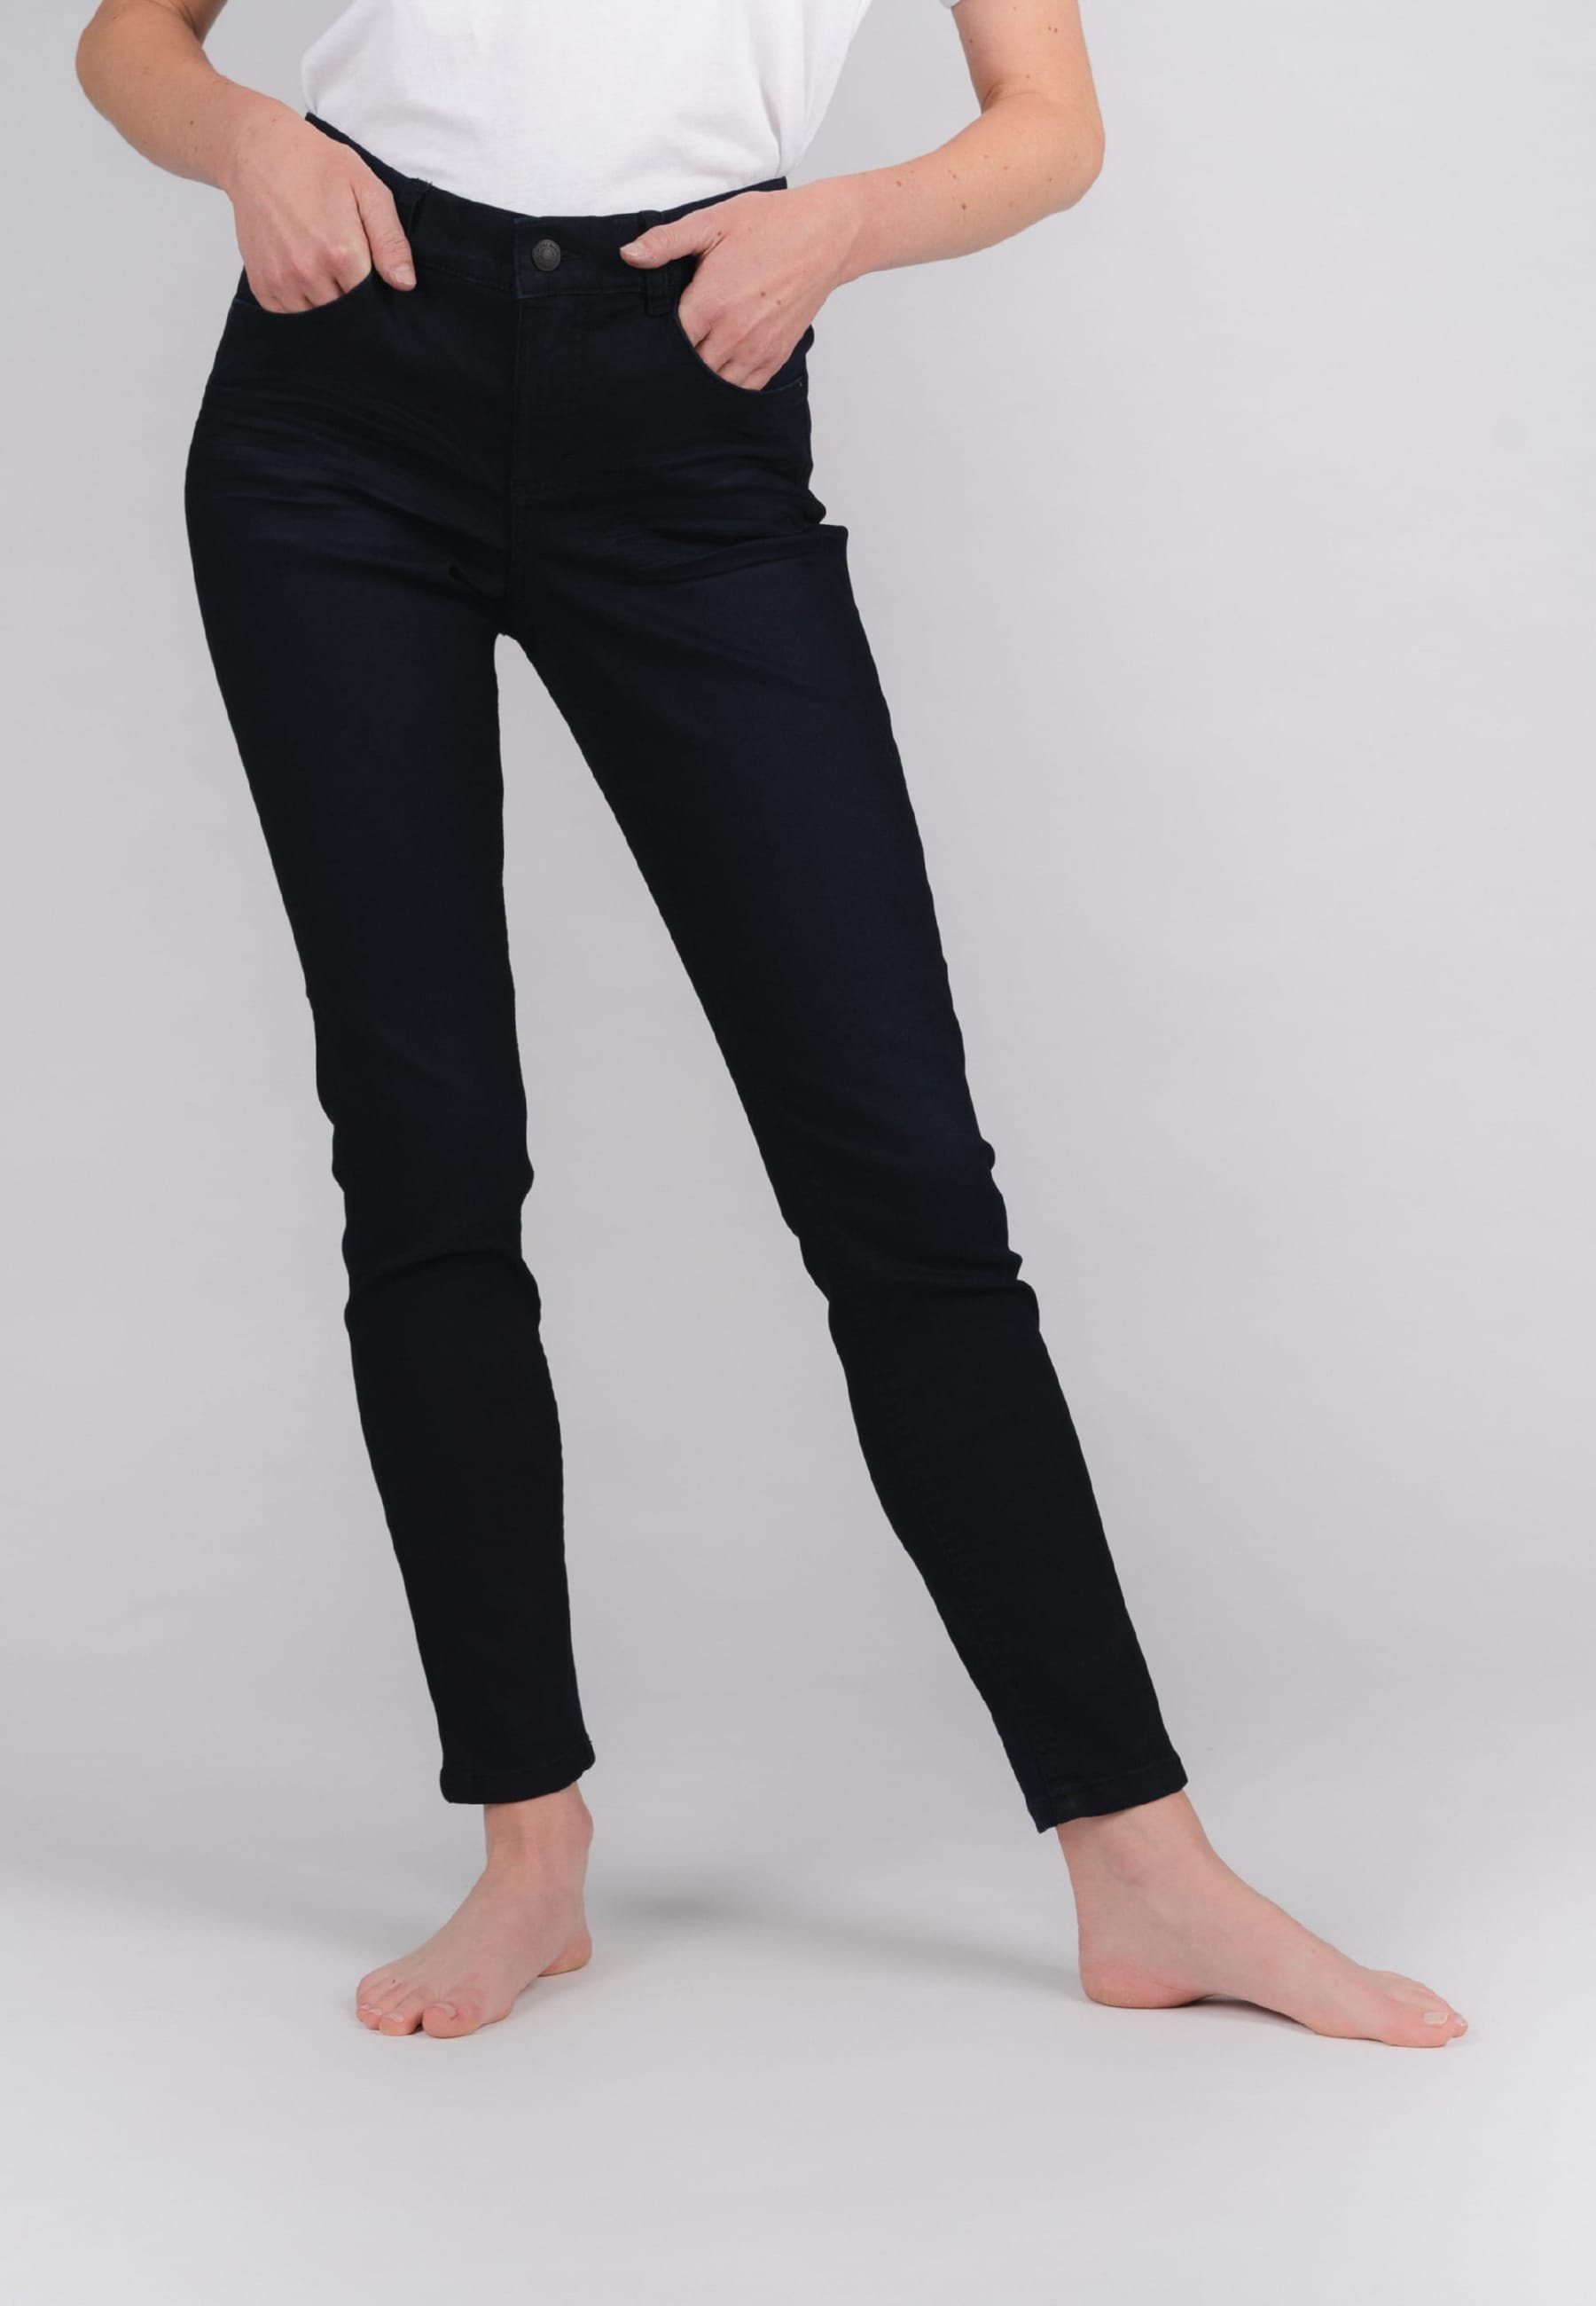 ANGELS Slim-fit-Jeans Jeans Mit Stretch-bund One mit dunkelblau Size Label-Applikationen